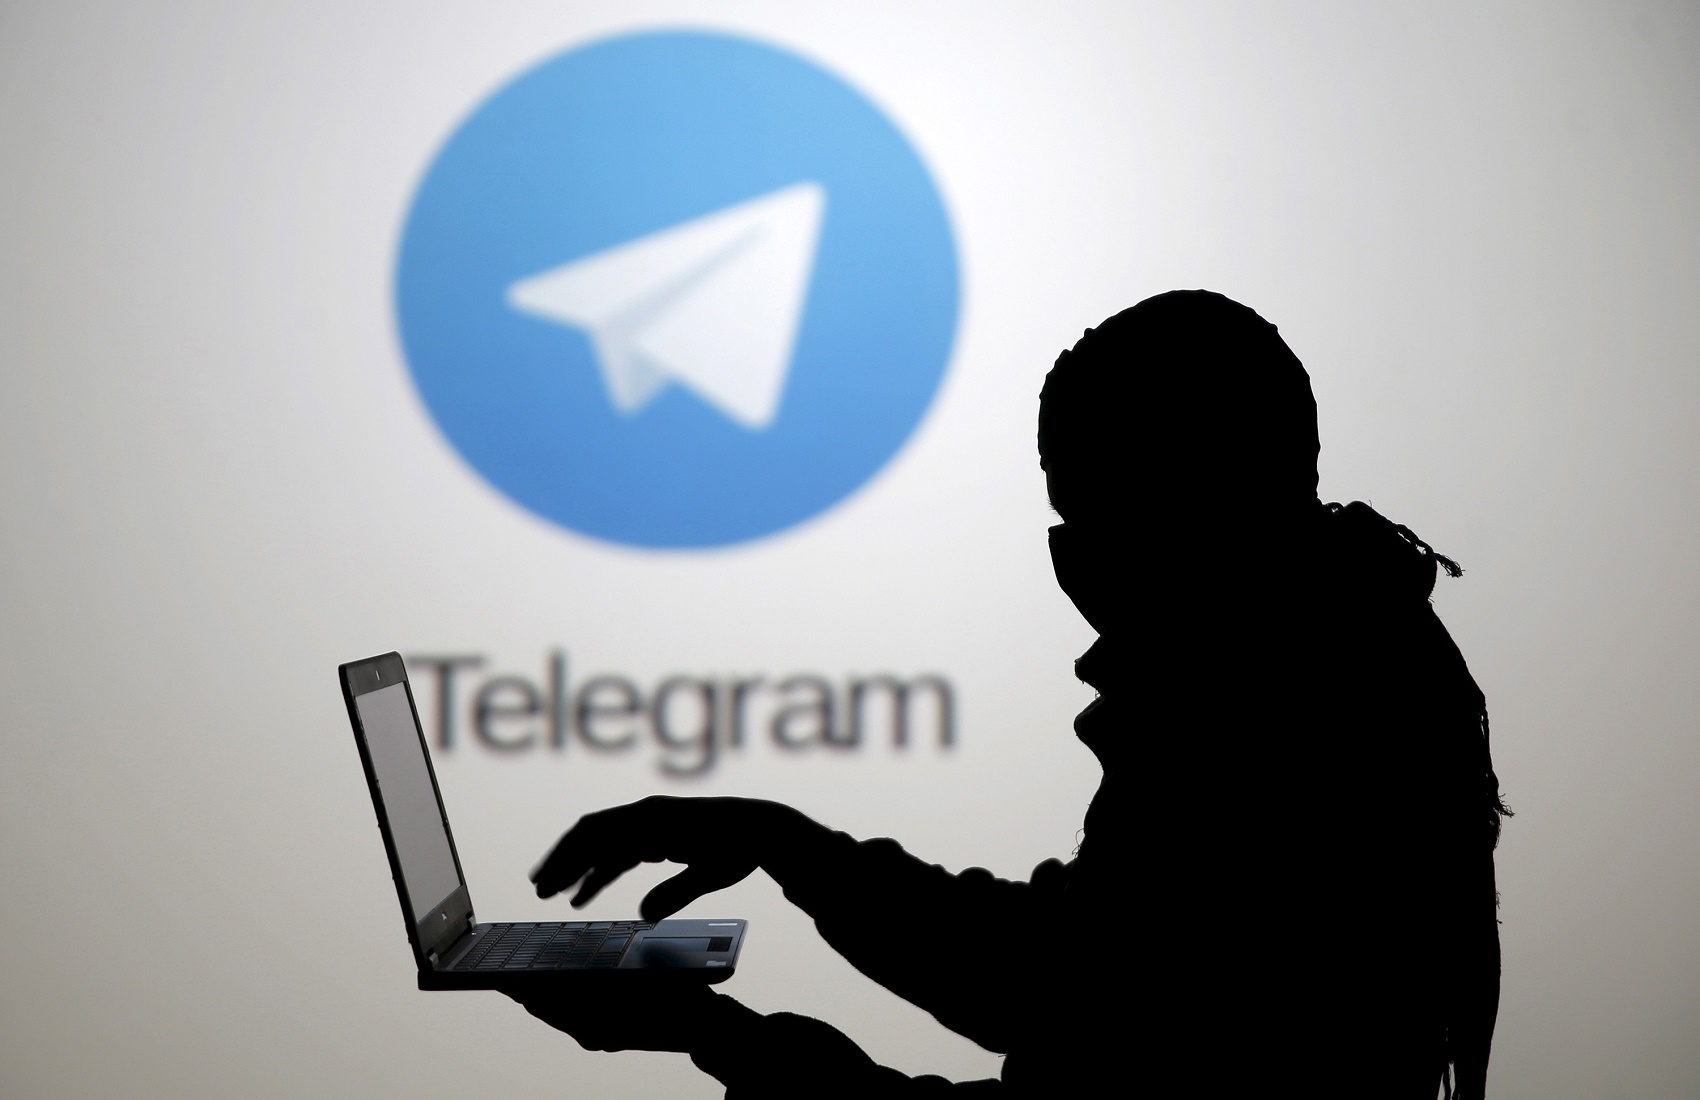 У Telegram віджартувалися після масштабного збою